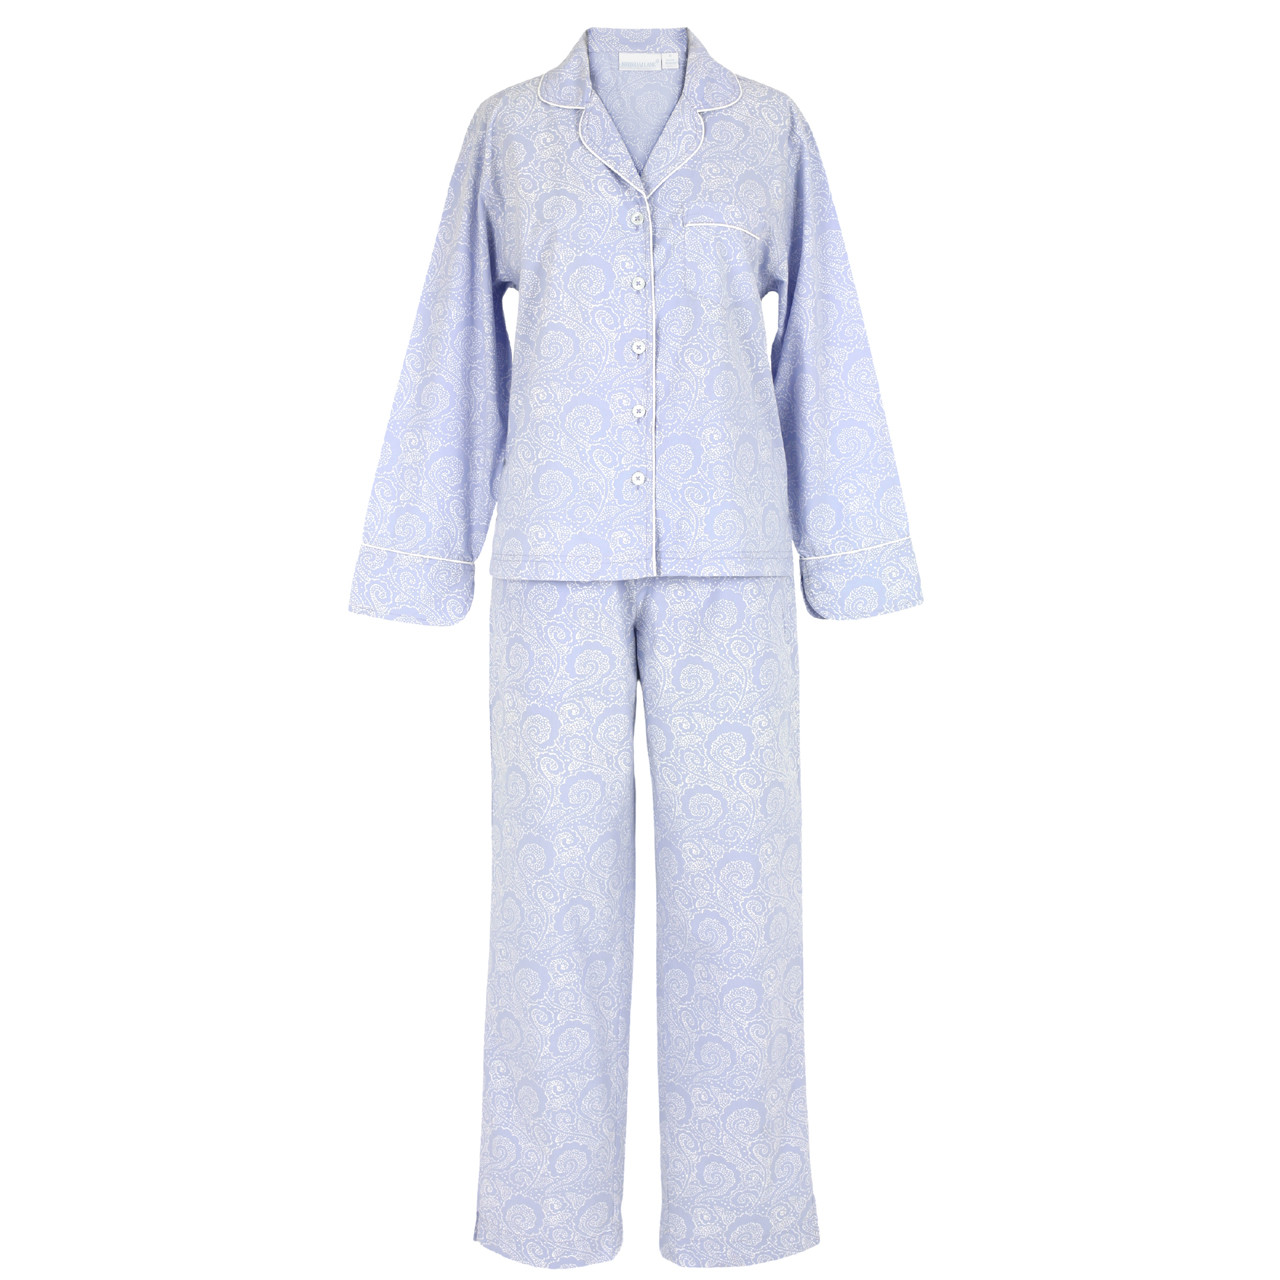 JNGSA Women's Two Piece Cotton Linen Set Plain Button Long Sleeve